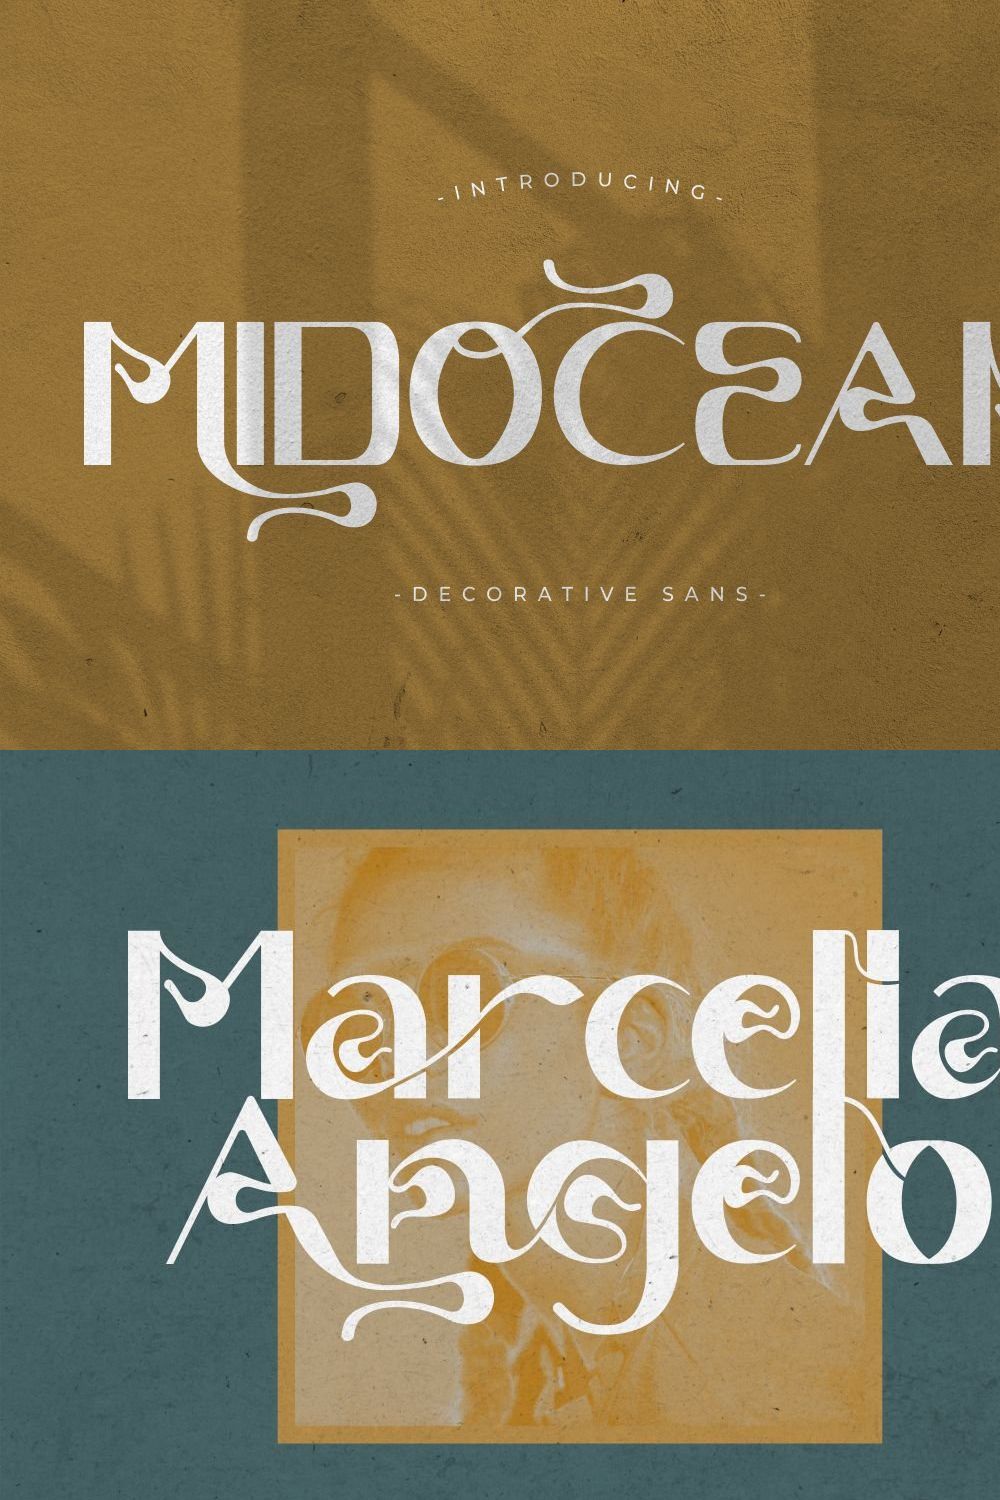 Midocean - Decorative Sans Font pinterest preview image.